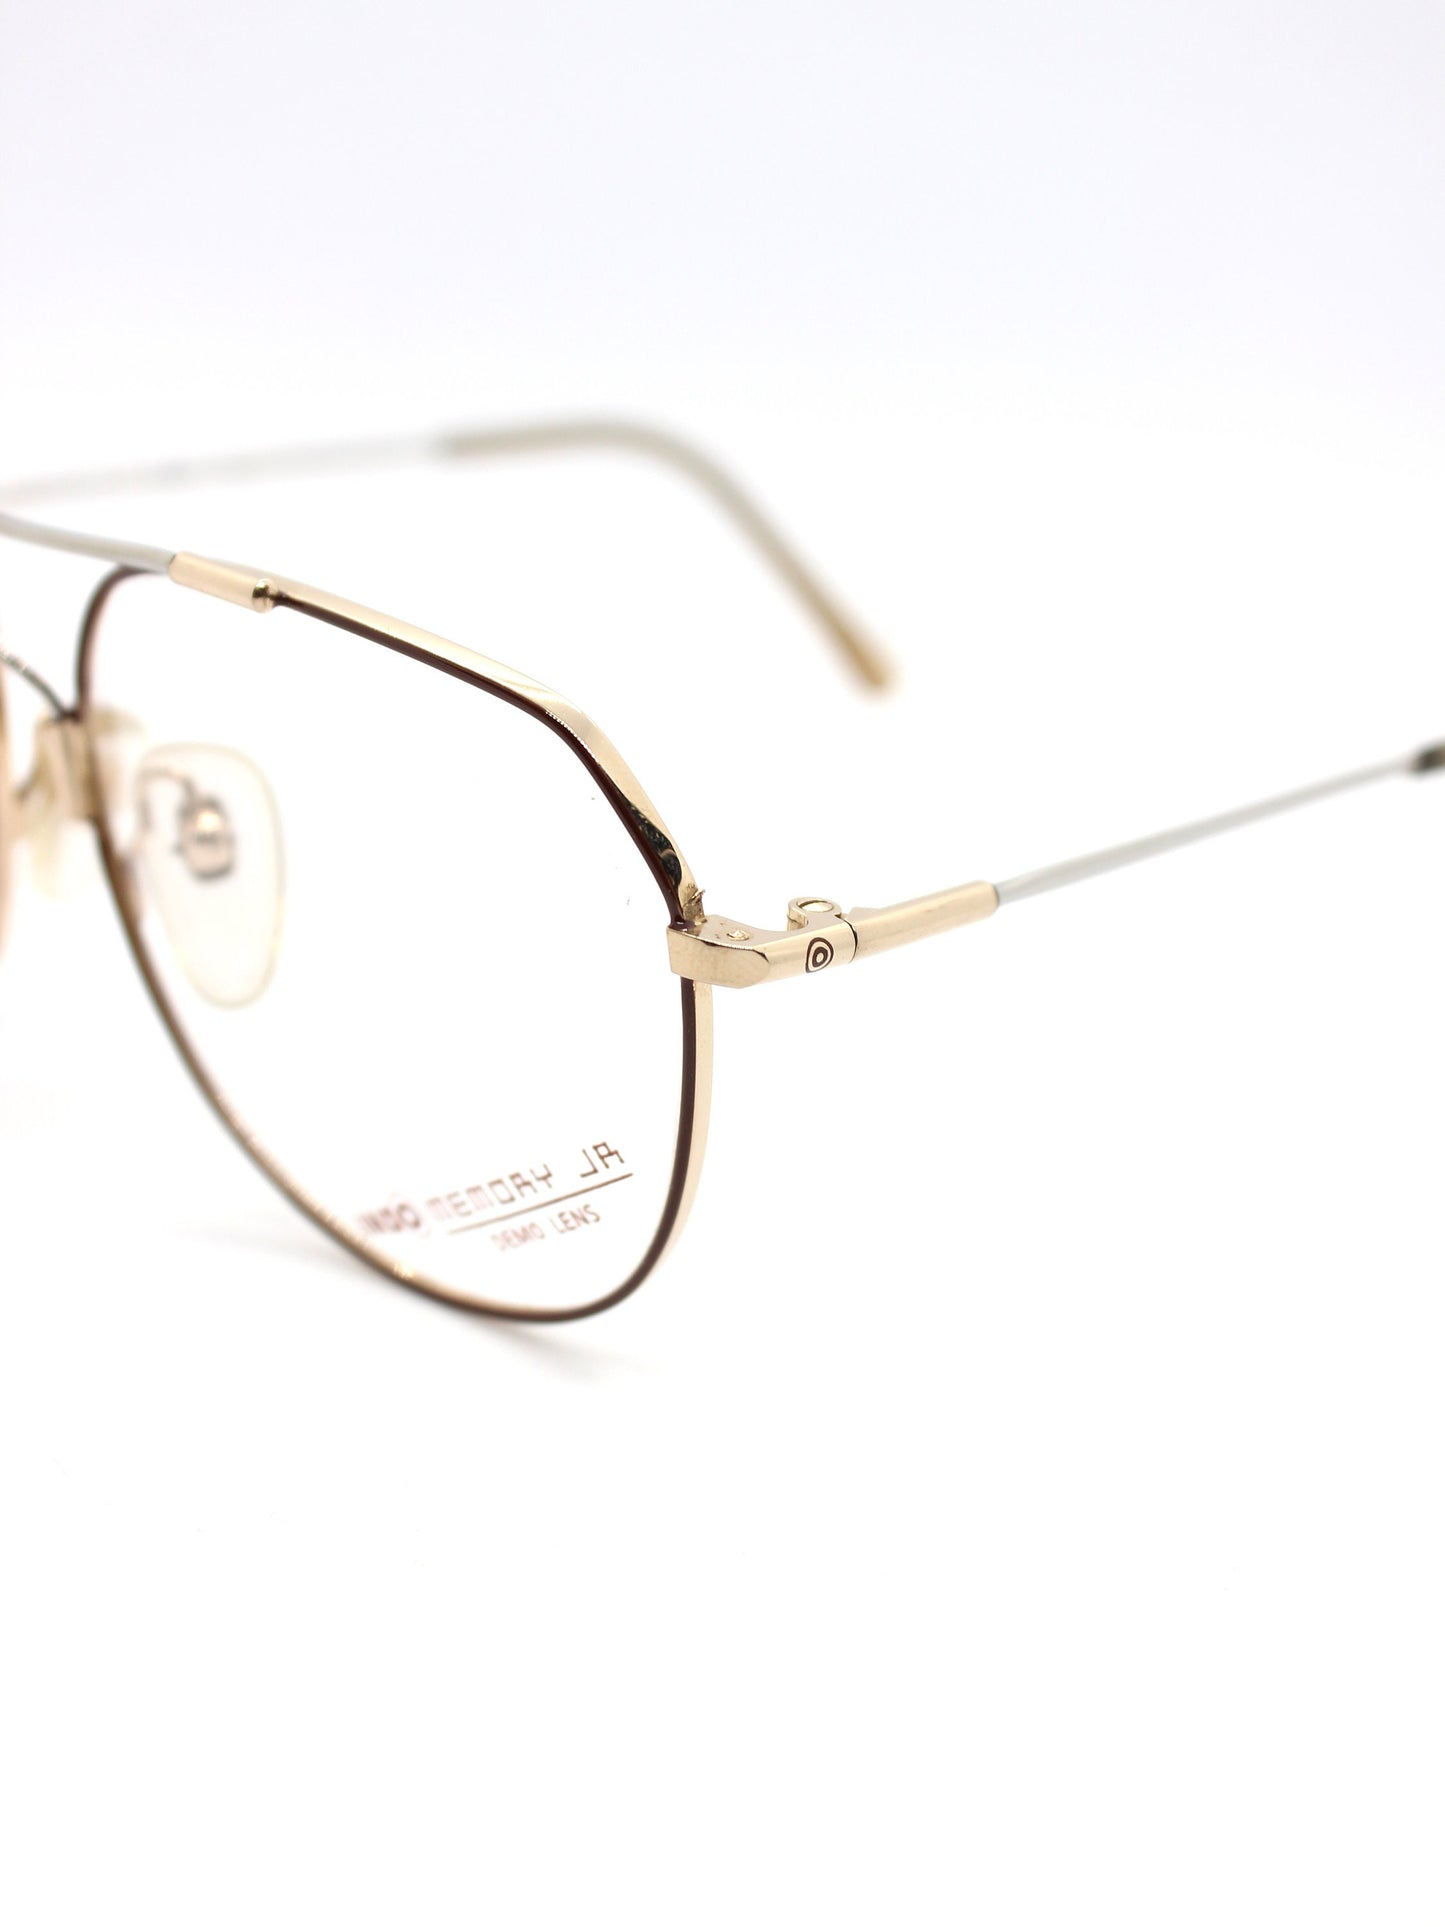 Indo Aviator Eyeglasses - Mod. Memory Jr.